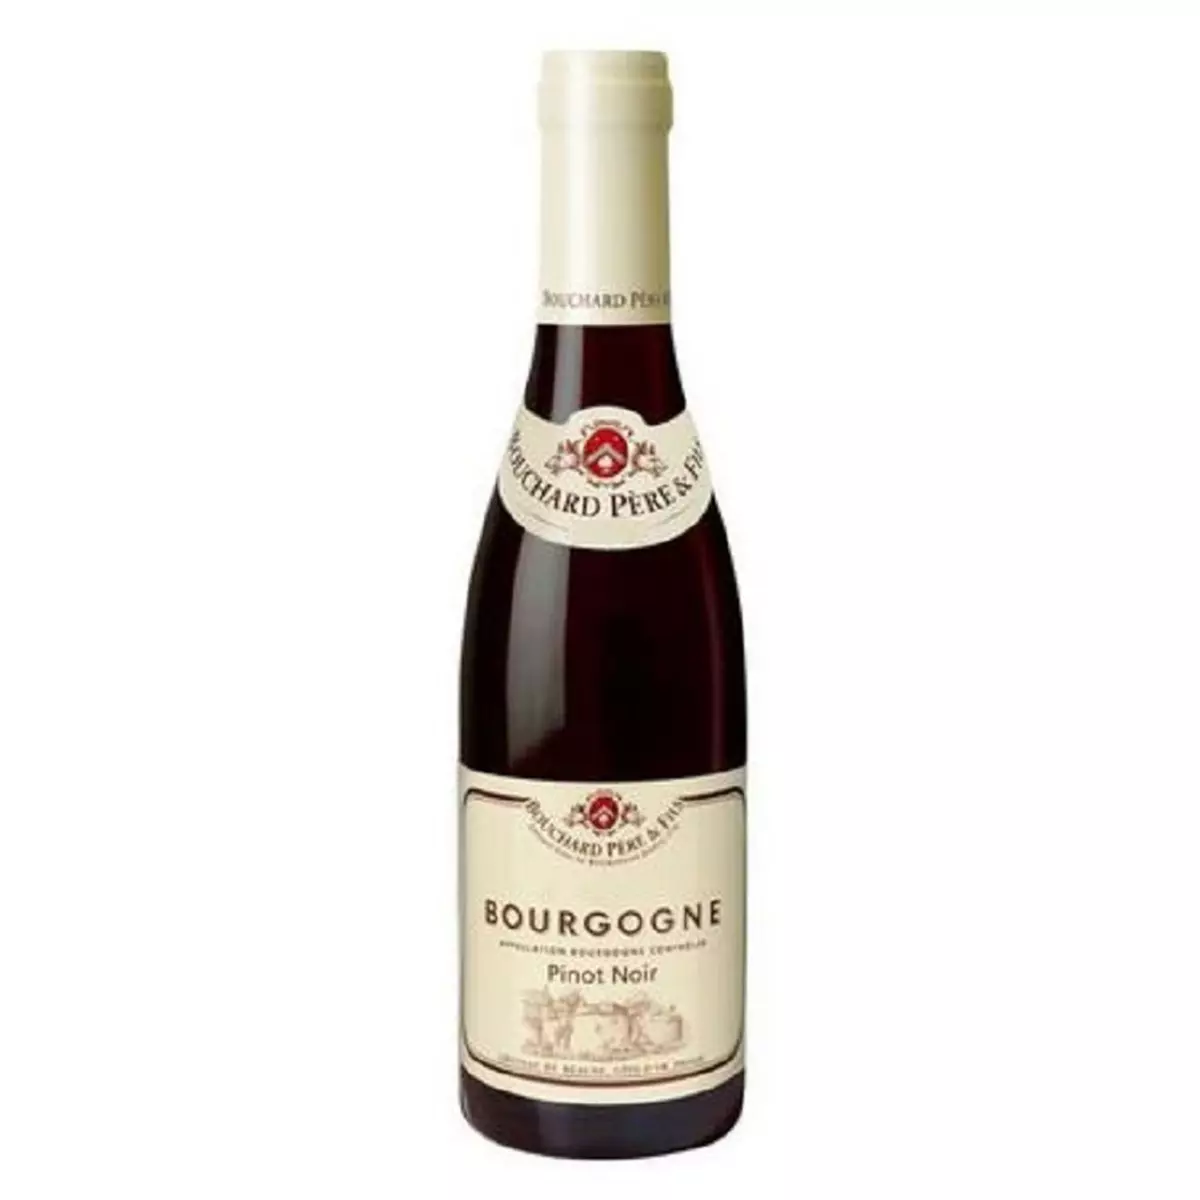 BOUCHARD PERE ET FILS AOP Bourgogne pinot noir rouge 37,5cl